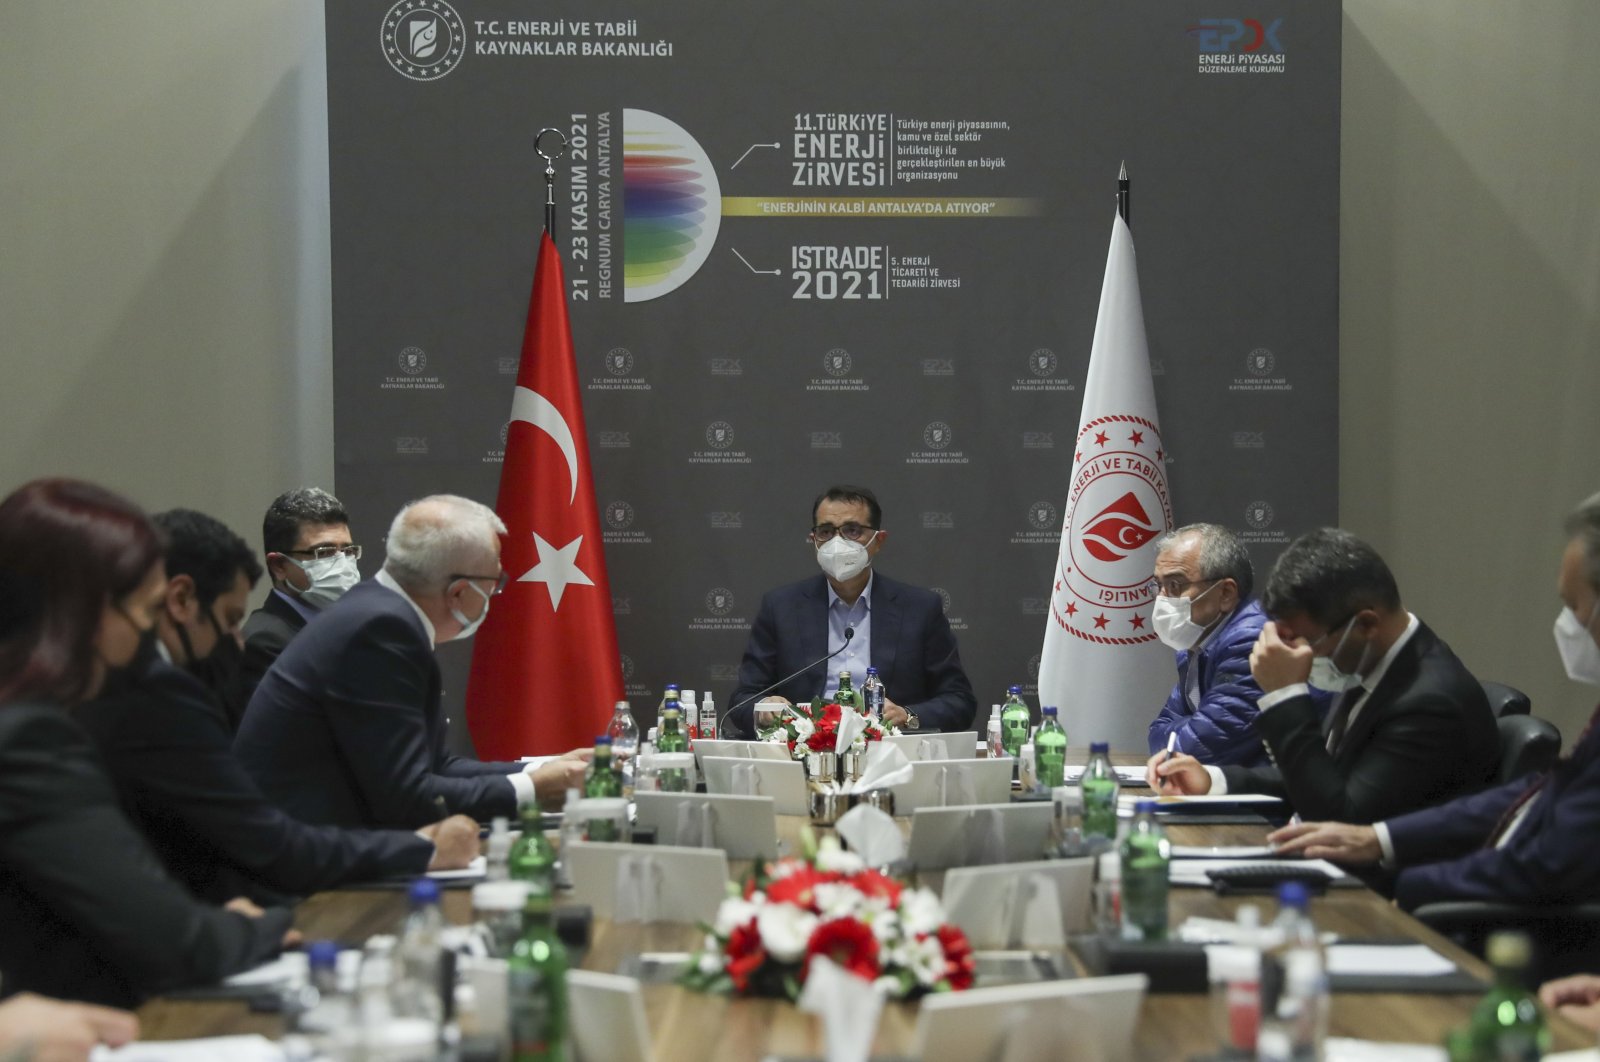 KTT Energi Turki ke-11 dimulai dengan gas alam, Kesepakatan Hijau dalam agenda